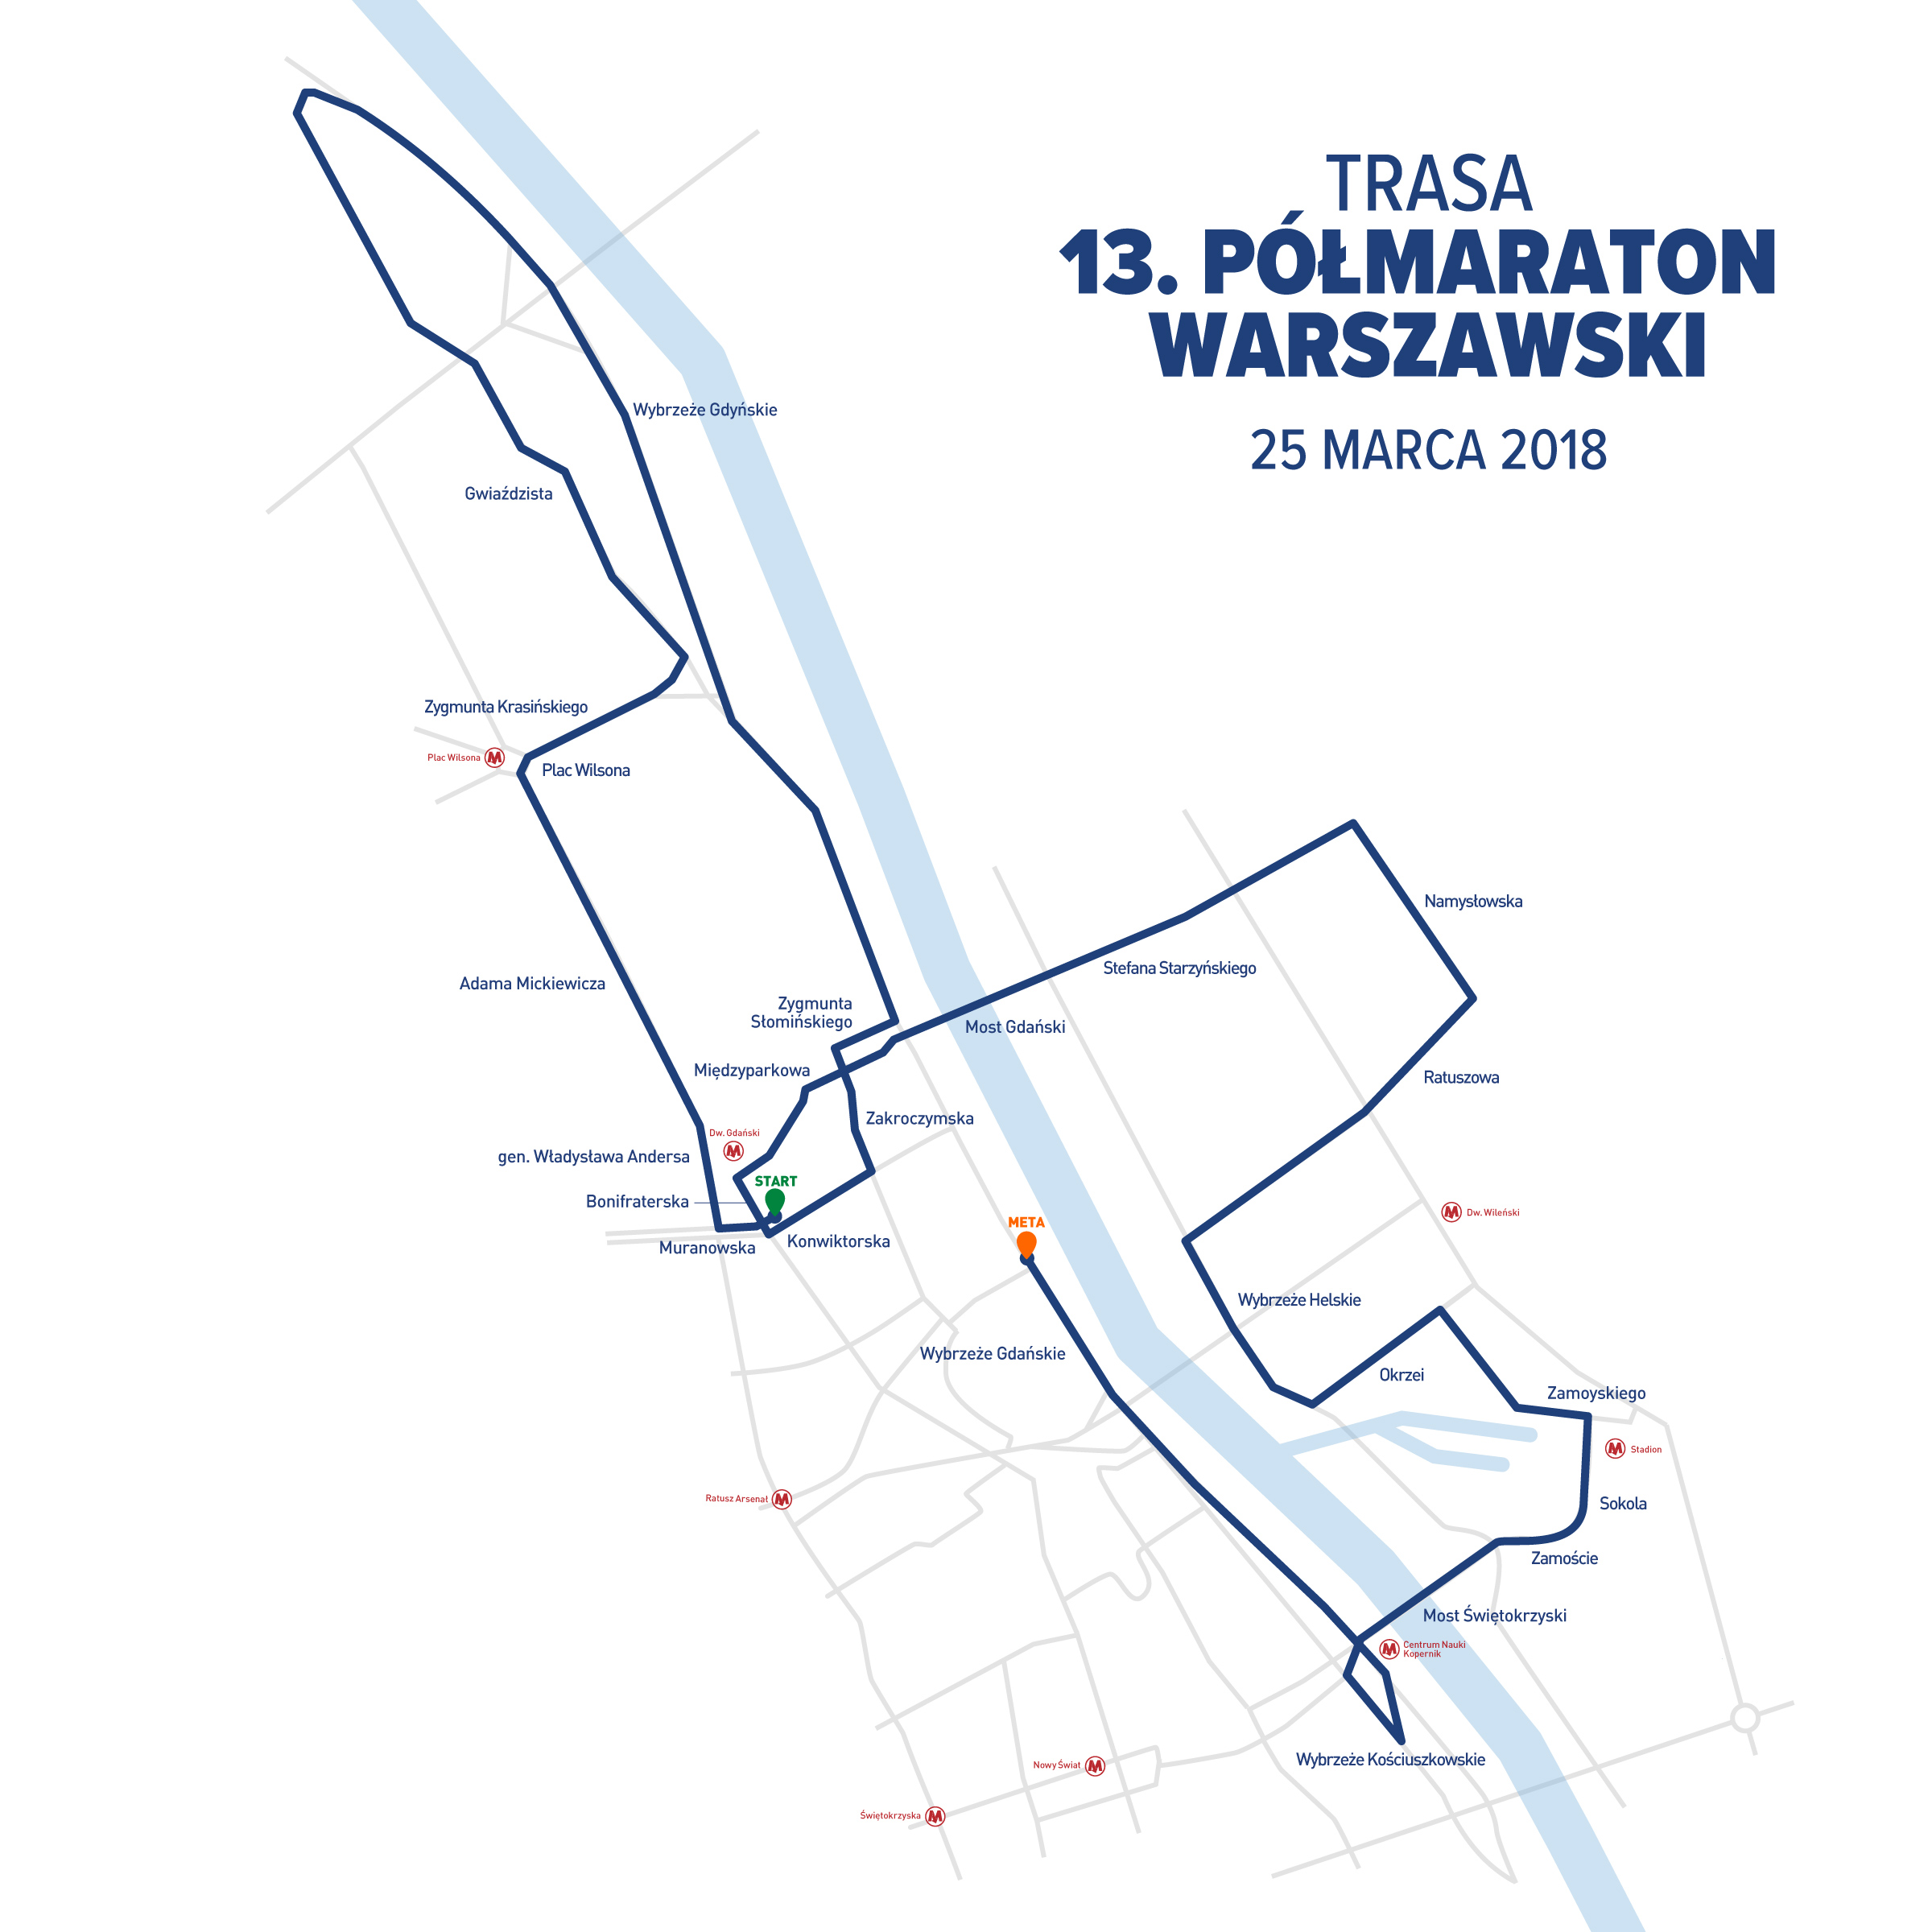 Trasa półmaratonu | Półmaraton Warszawski